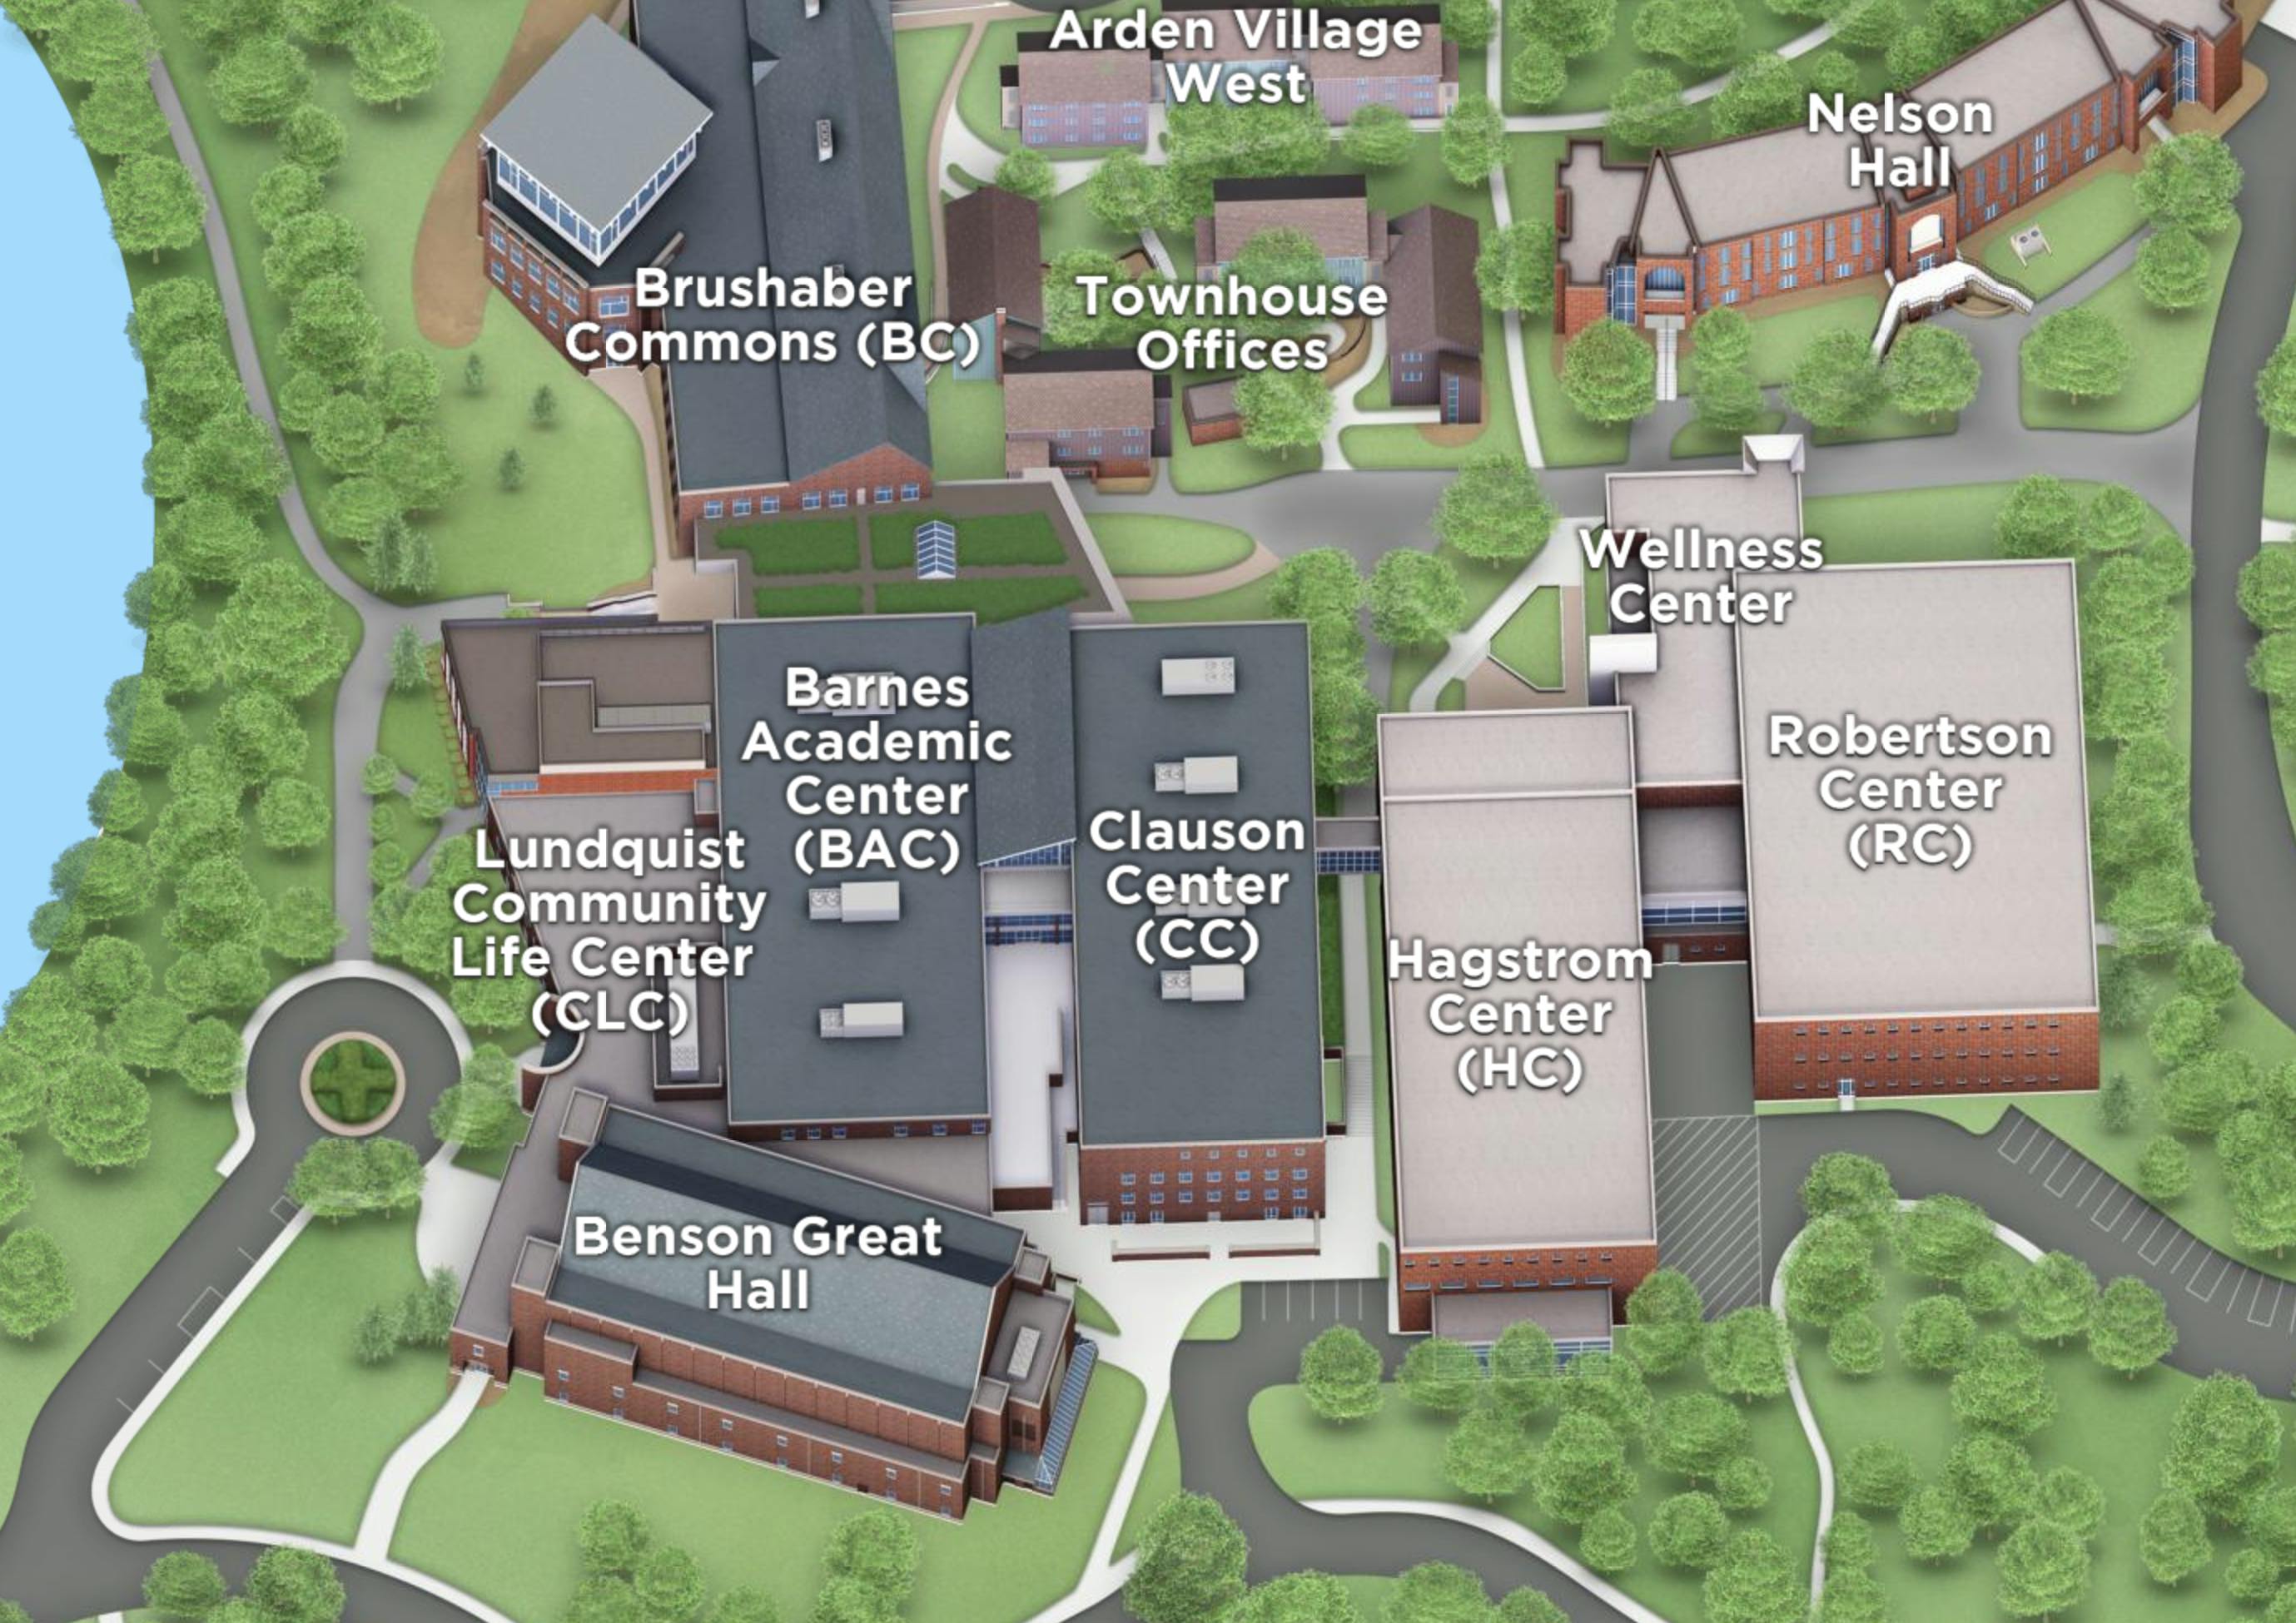 Campus map image